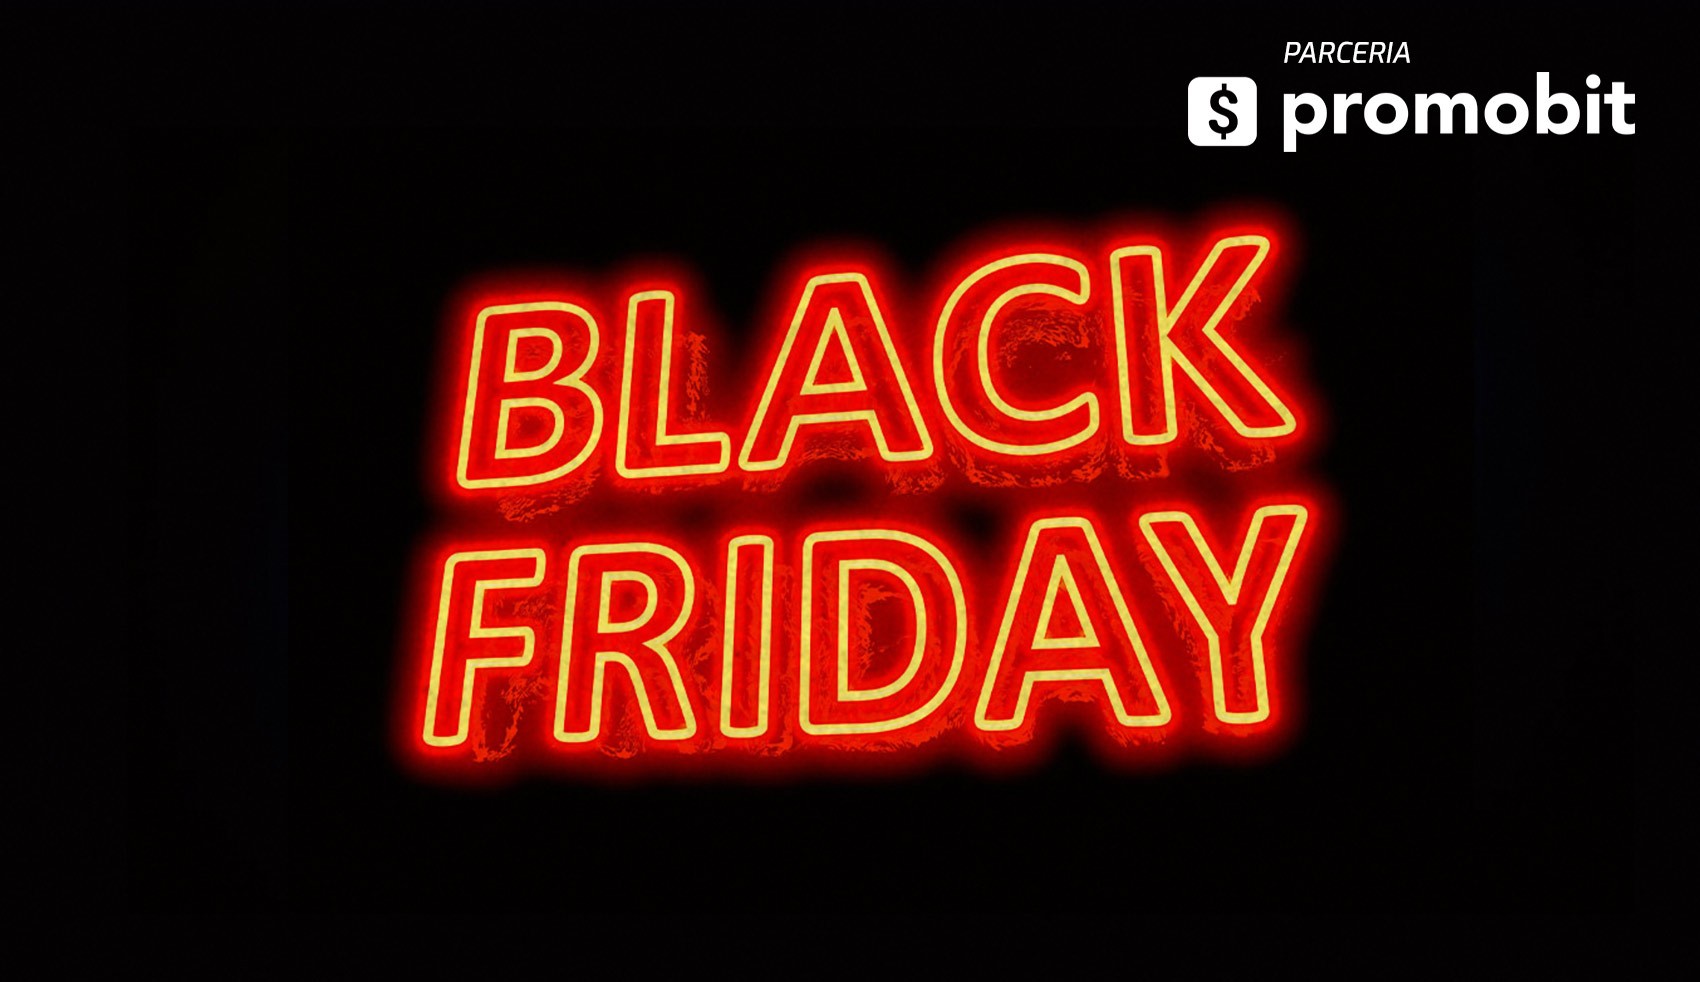 Black Friday na Steam: jogos para PC por menos de R$ 20